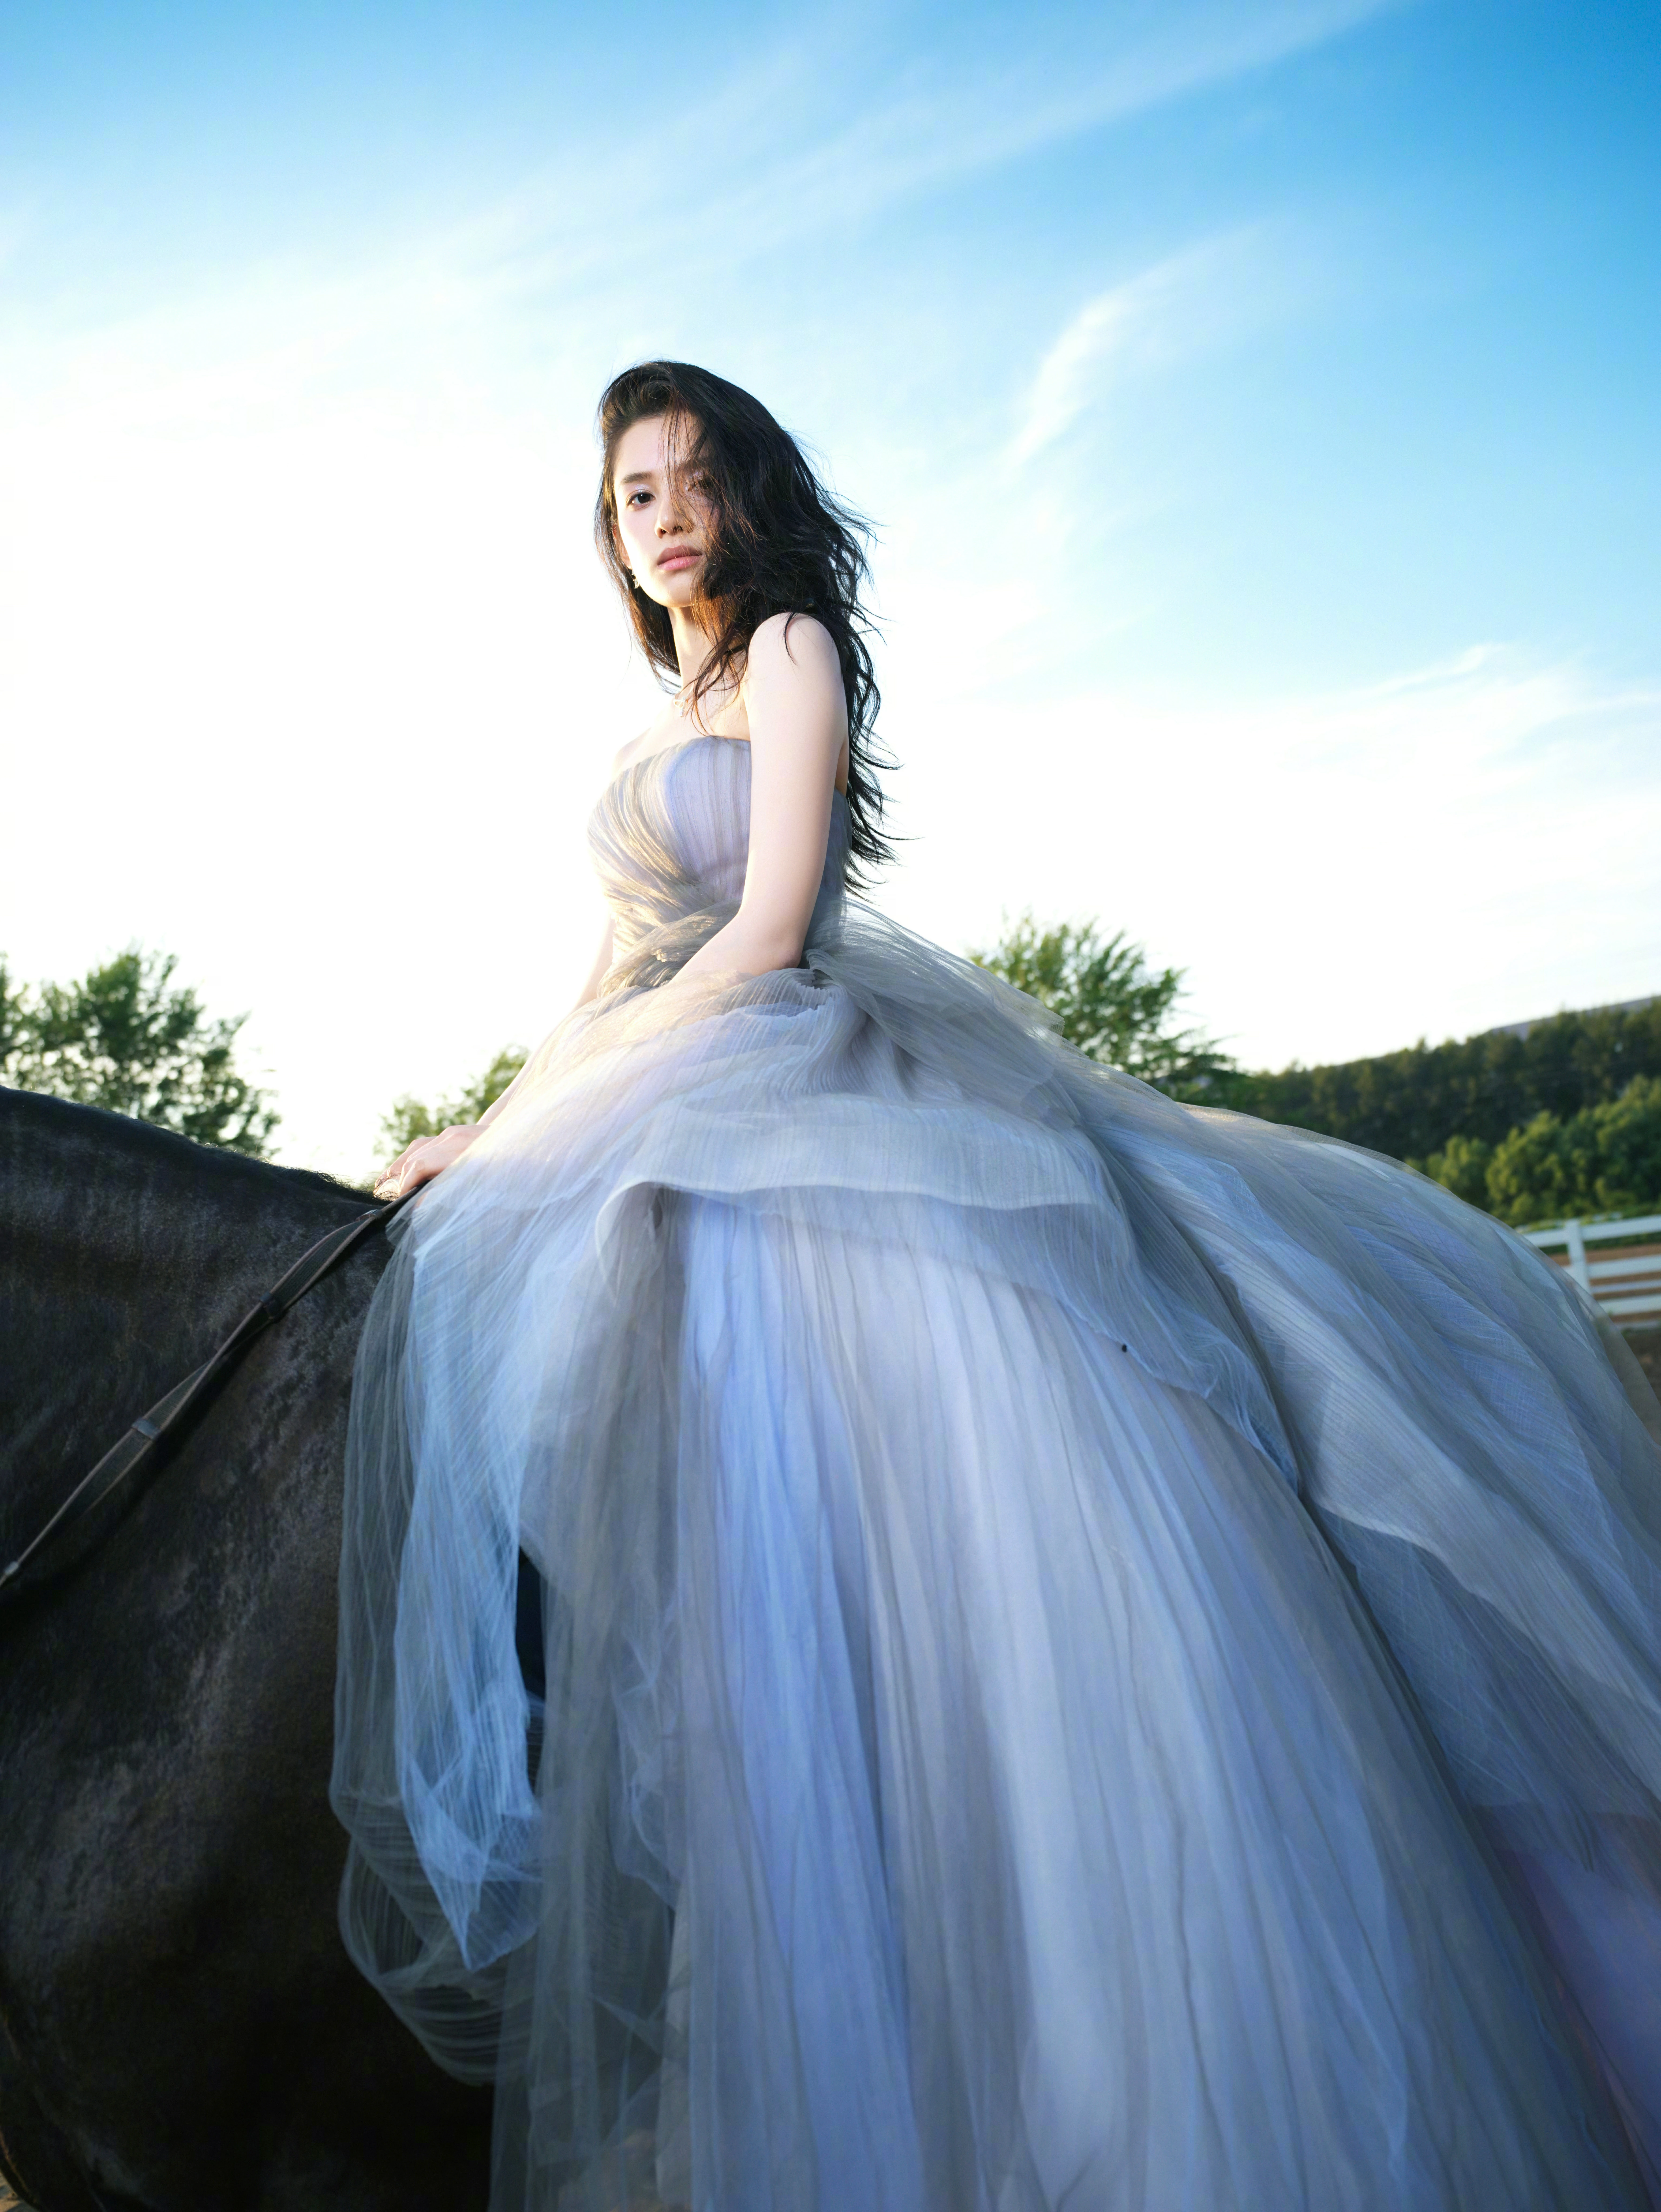 张婧仪穿蓝色公主裙显高贵气质 骑马姿势优雅侧颜迷人,1